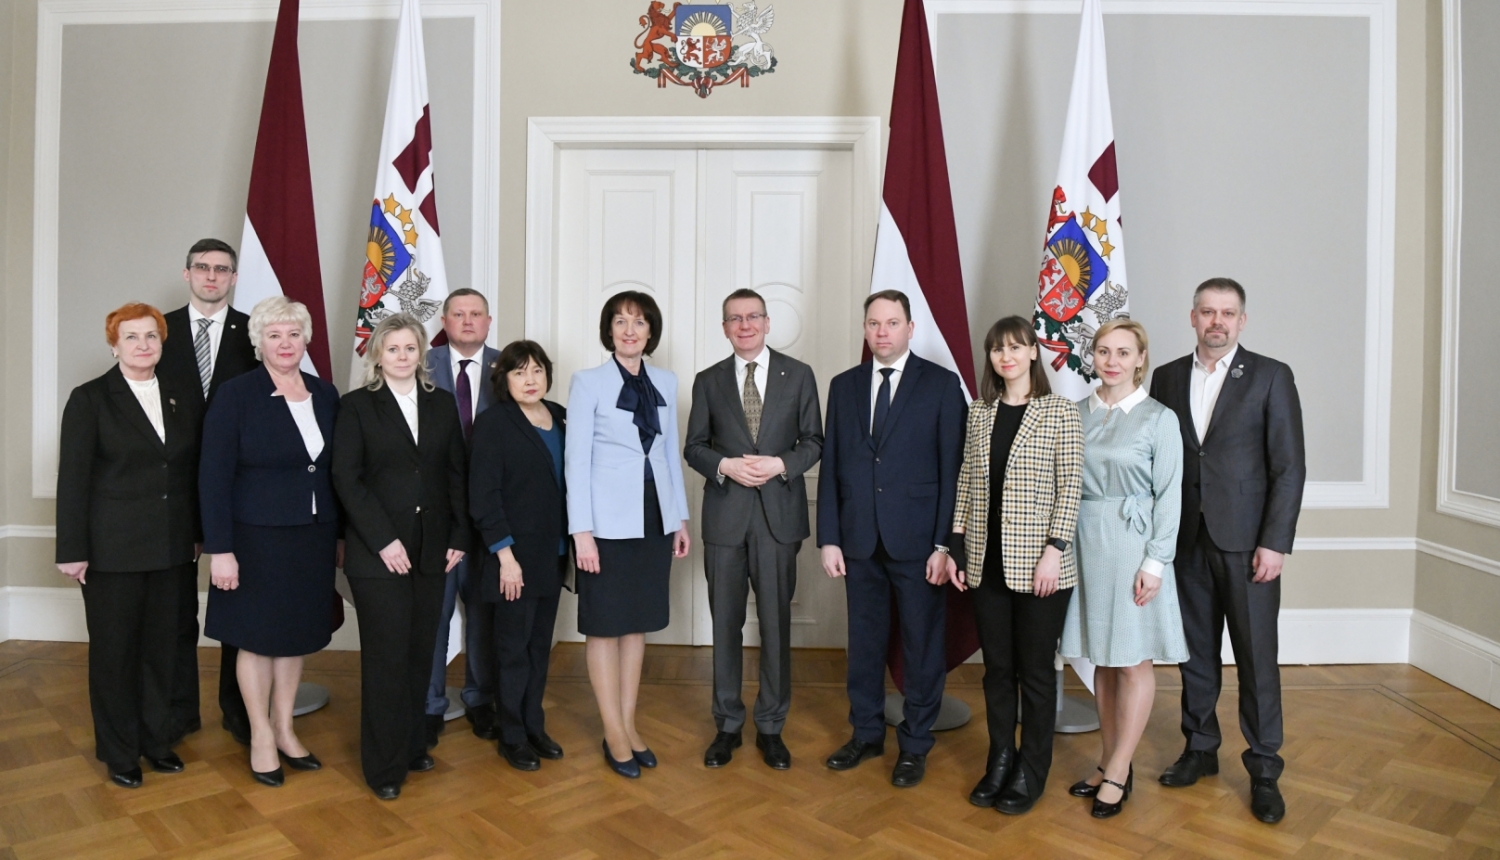 Valsts prezidenta Edgara Rinkēviča tikšanās ar Saeimas Latgales apakškomisijas deputātiem un vides aizsardzības un reģionālās attīstības ministri Ingu Bērziņu